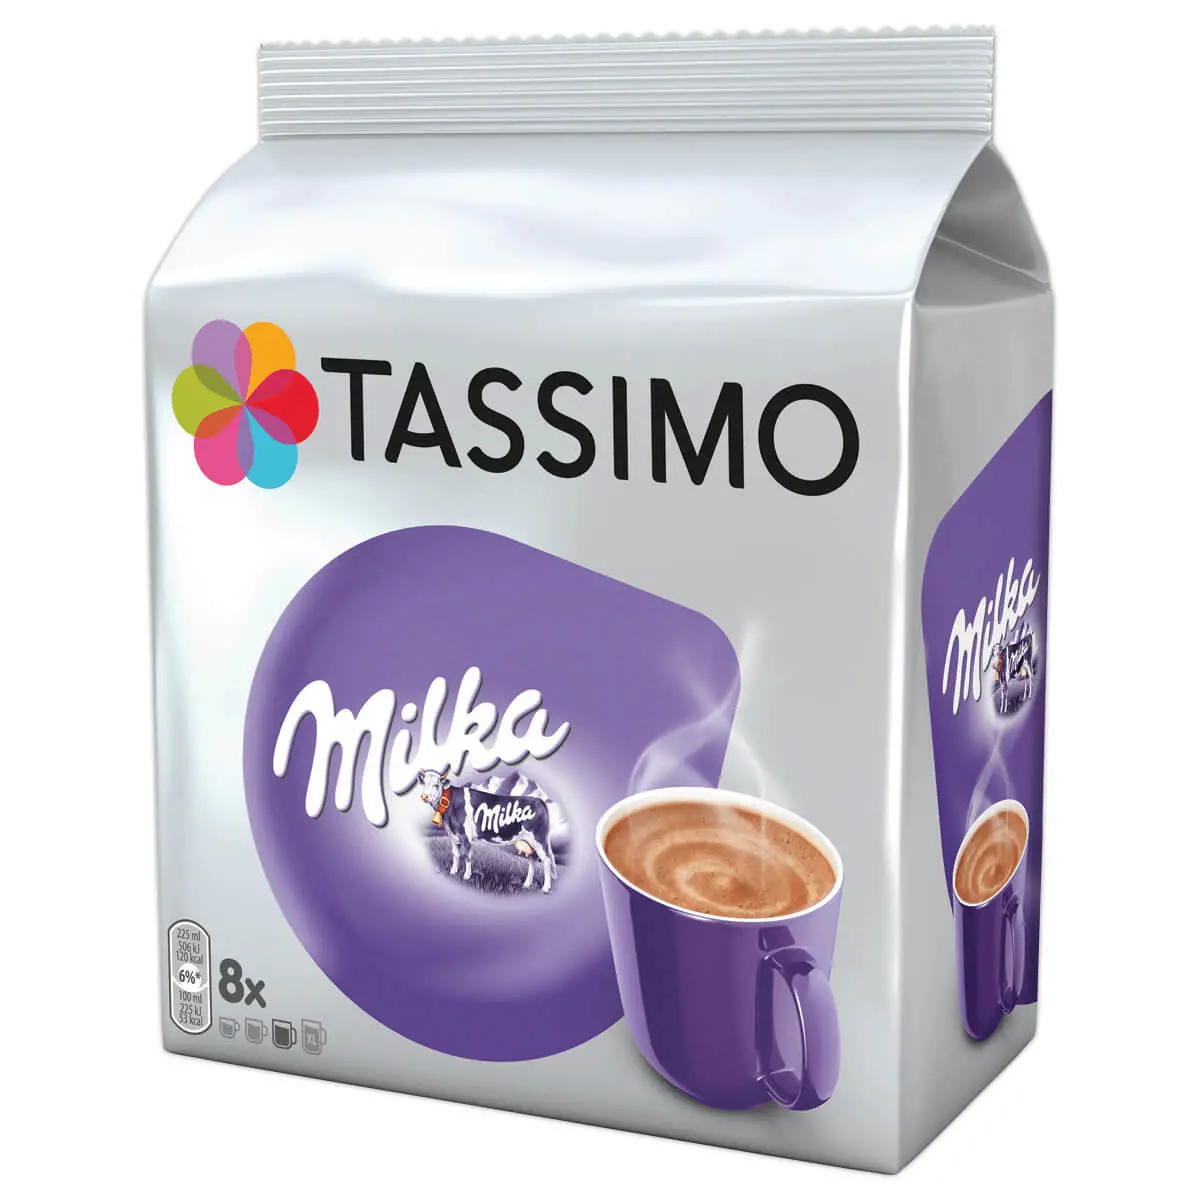 Porte-capsules Tassimo Tiroir de rangement des sachets de café Tassimo  Series Distributeur de dosettes en